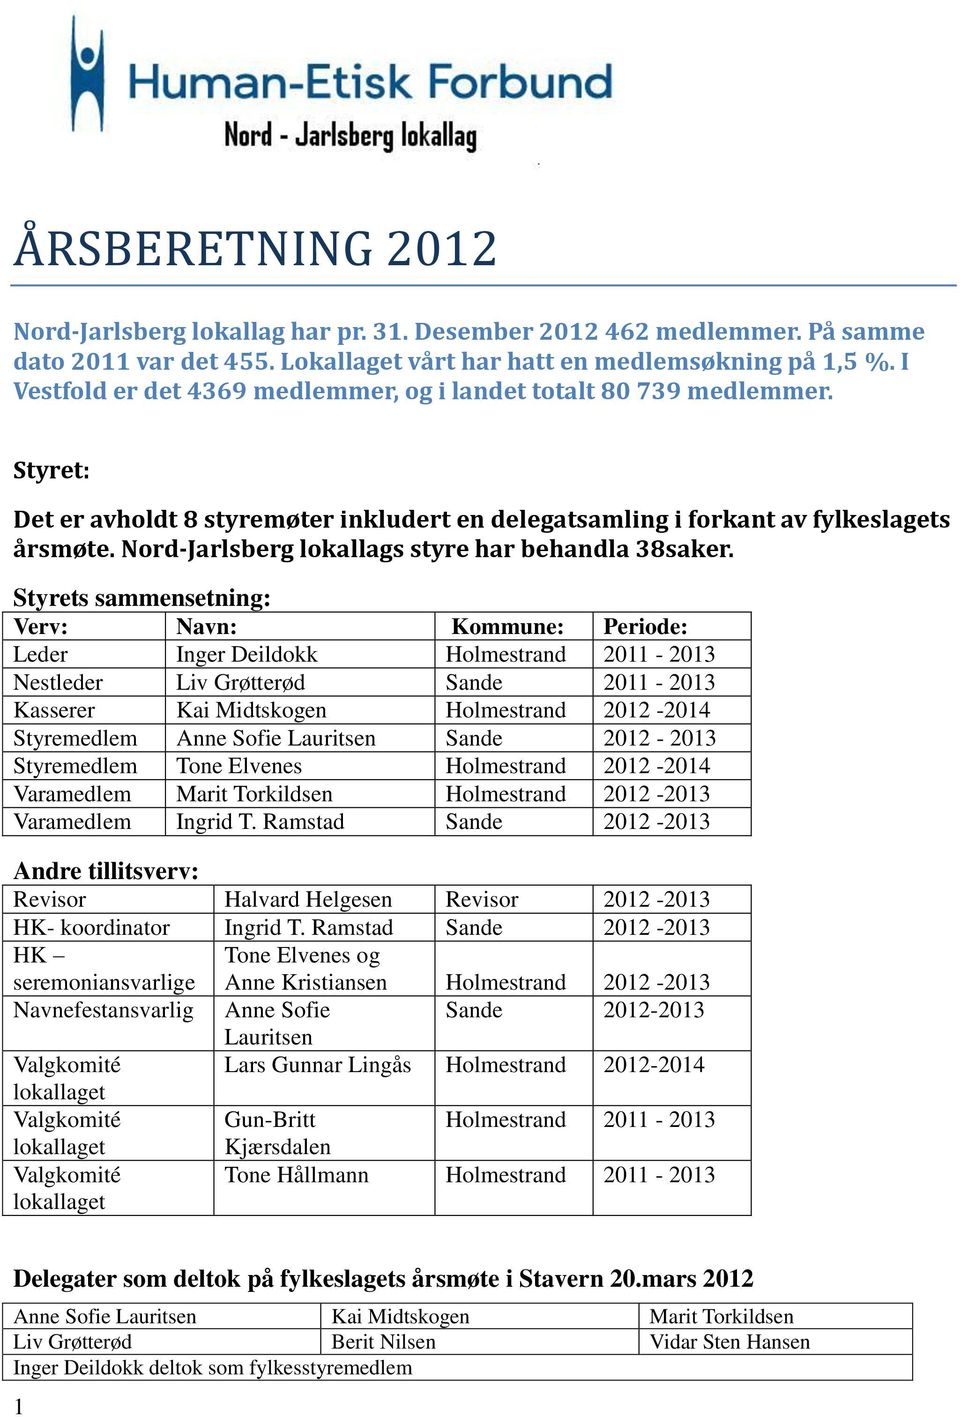 Nord-Jarlsberg lokallags styre har behandla 38saker.